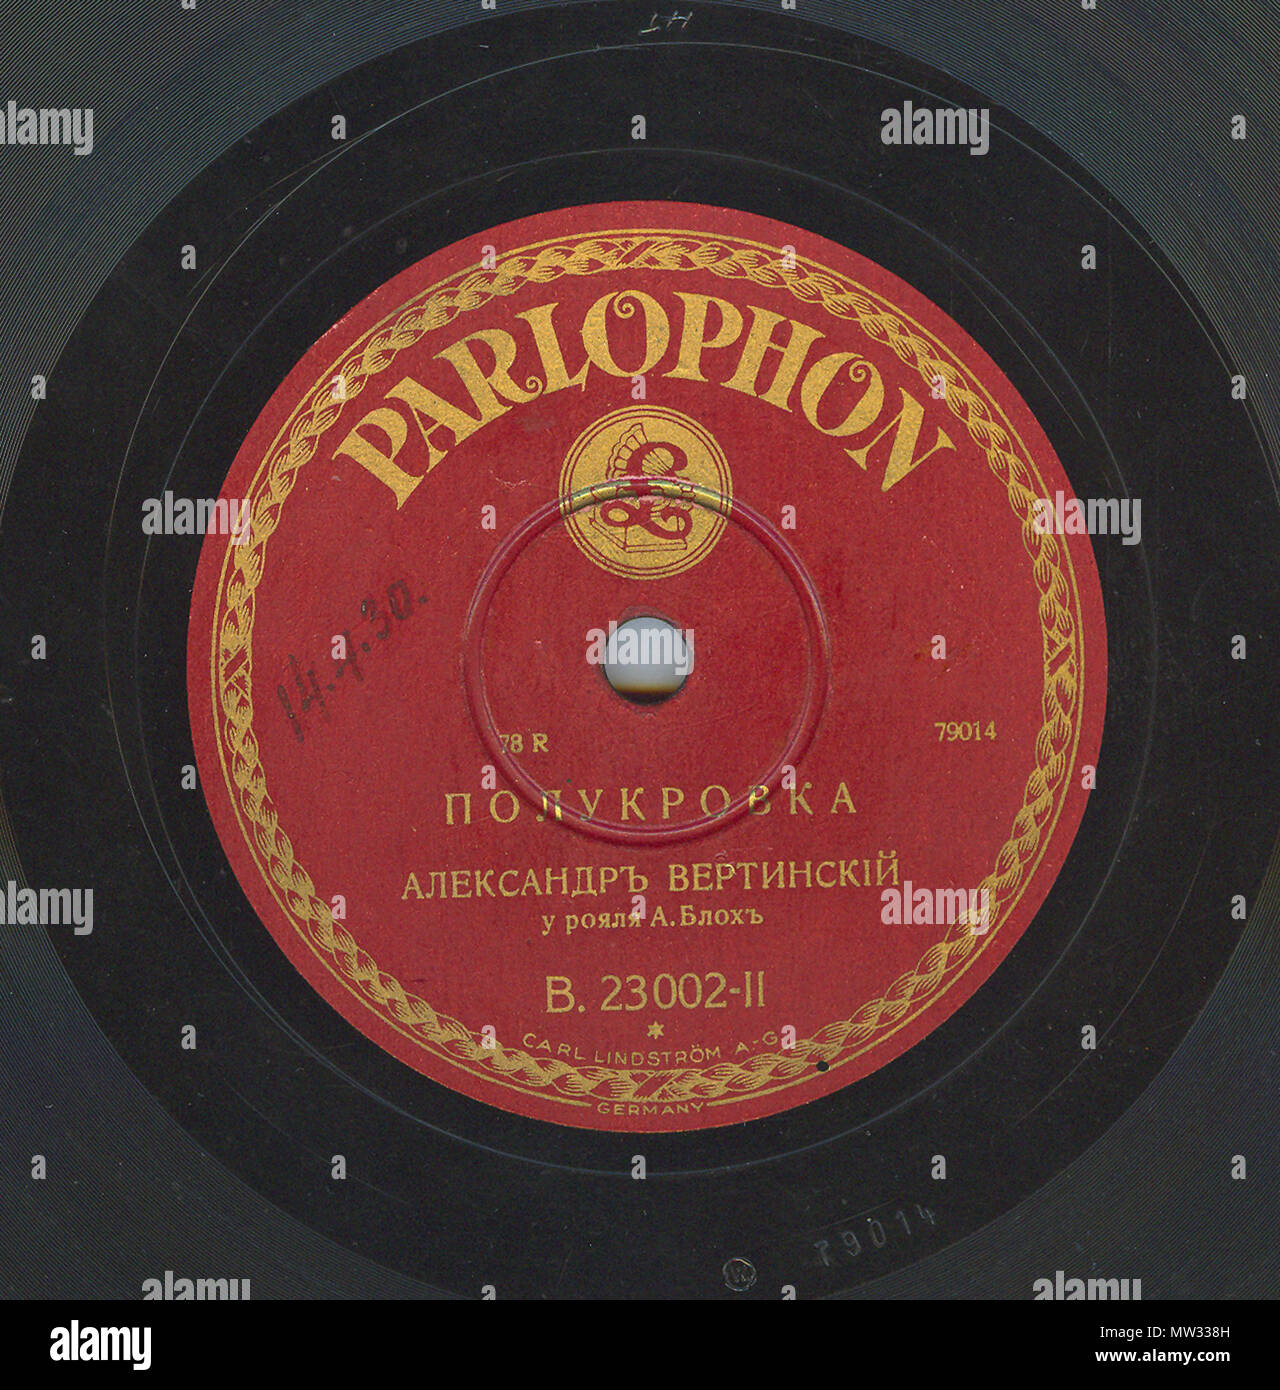 . Englisch: Vertinsky Parlophone B.23002 02. 6. April 2010, 12:08:43. Parlophone 629 Vertinsky Parlophone B.23002, 02. Stockfoto